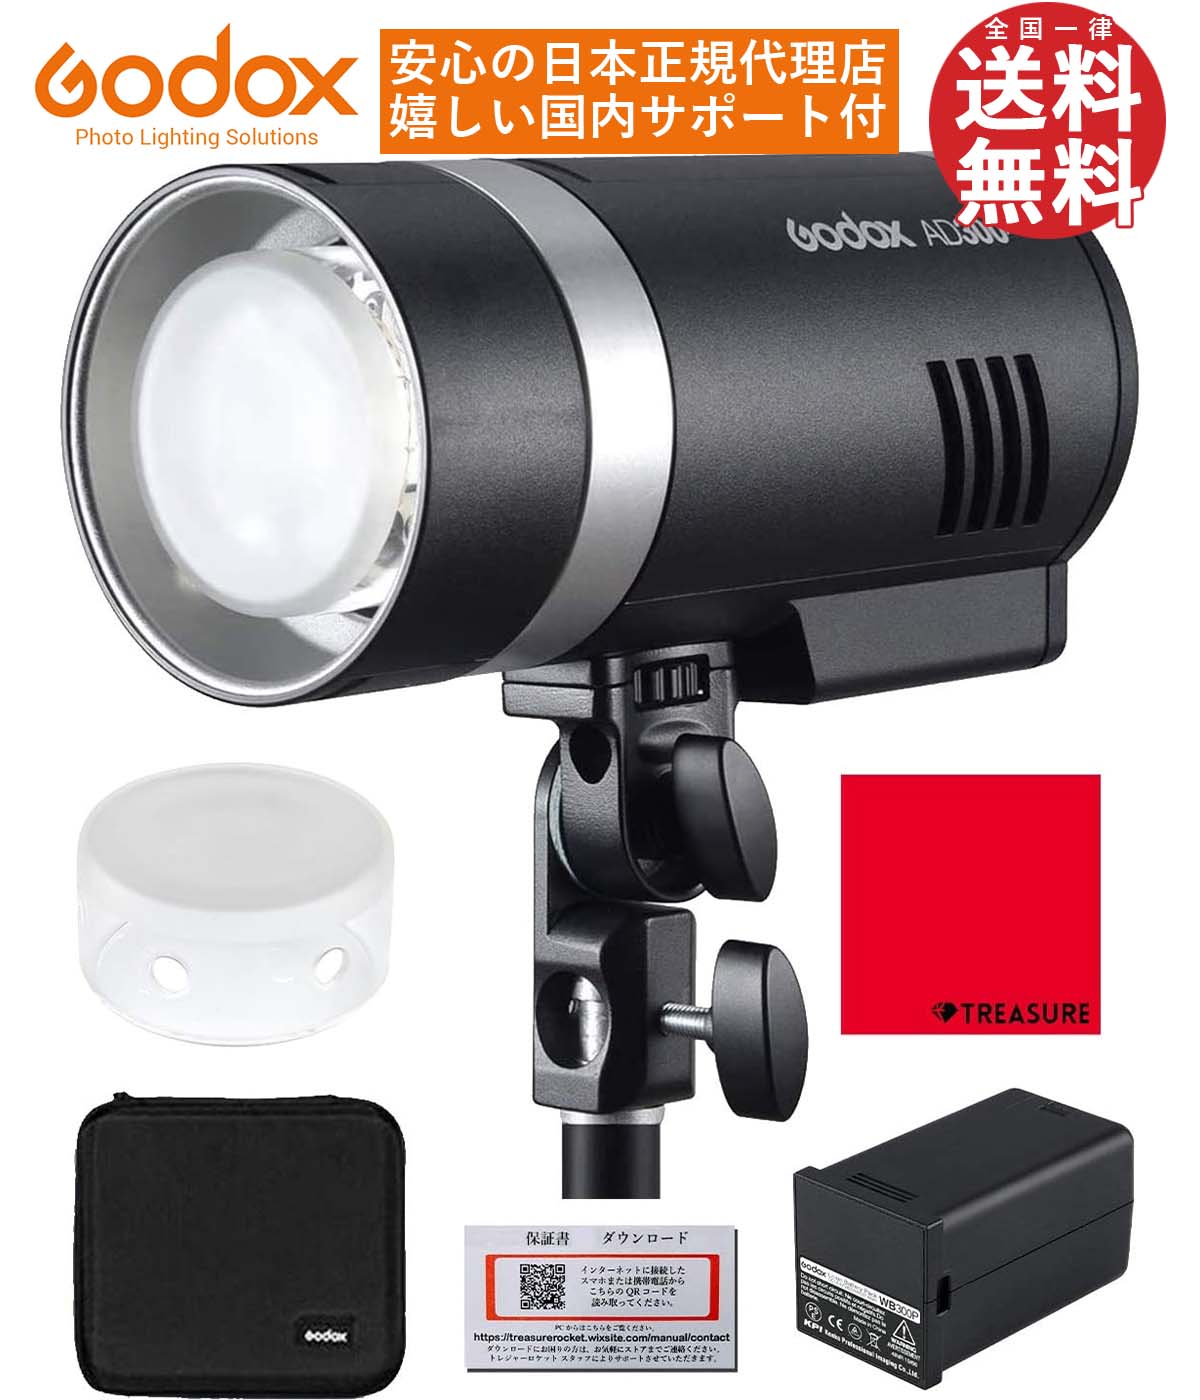 [国内正規代理店] Godox AD300Pro 300W 3000-6000K LEDモデリングランプ 1/8000 HSS 2.4G フラッシュ  ストロボ ライト [1年保証/日本語説明書/クロス付/セット品] (AD300Pro)